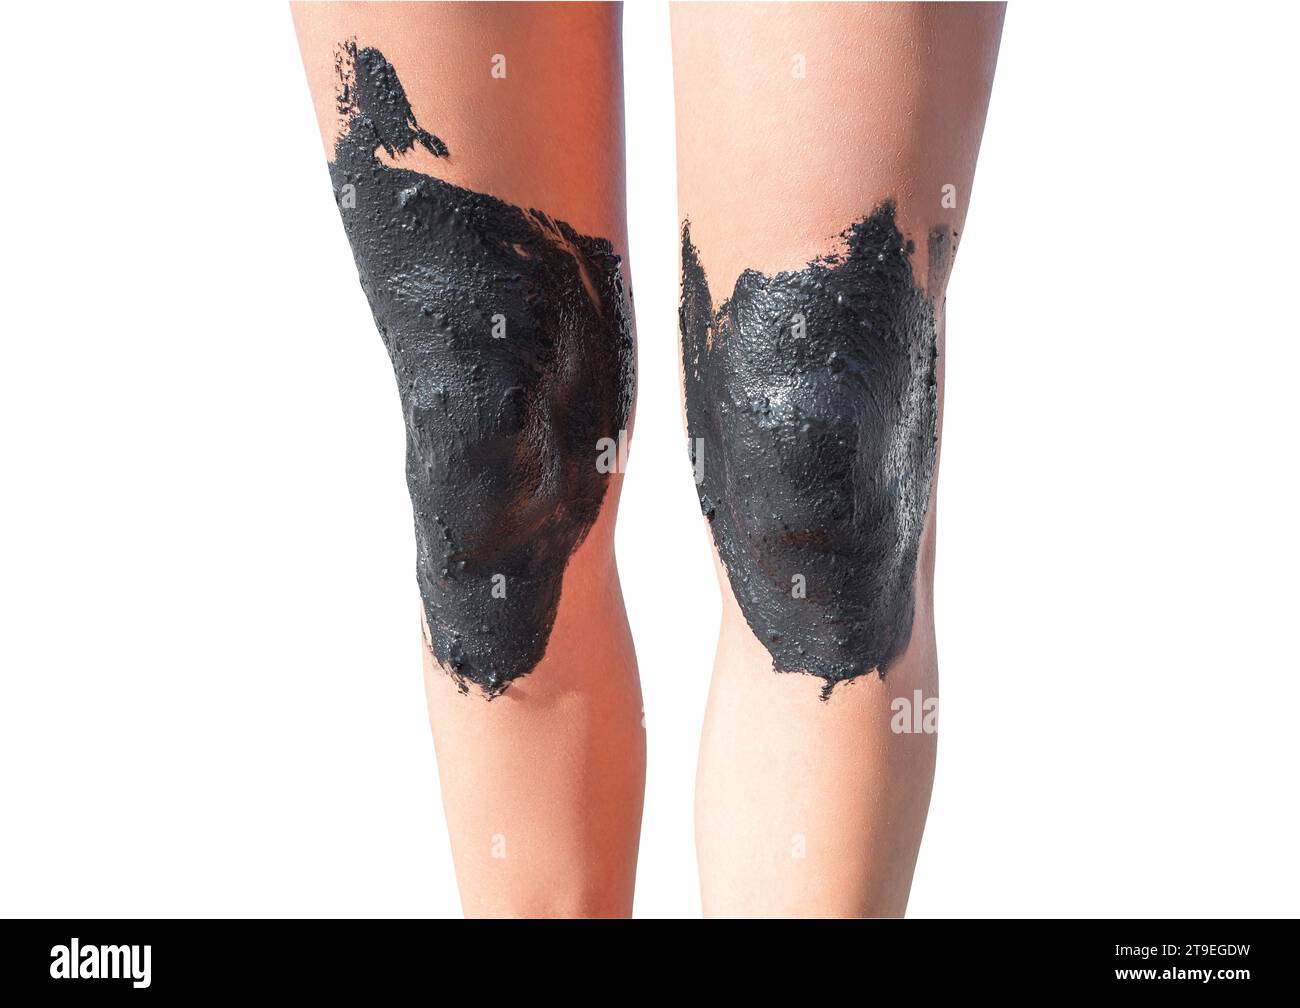 Frauen-Beine mit Knien, die mit therapeutischem Schlamm beschmiert sind, isoliert auf weißem Hintergrund mit Beschneidungspfad. Stockfoto